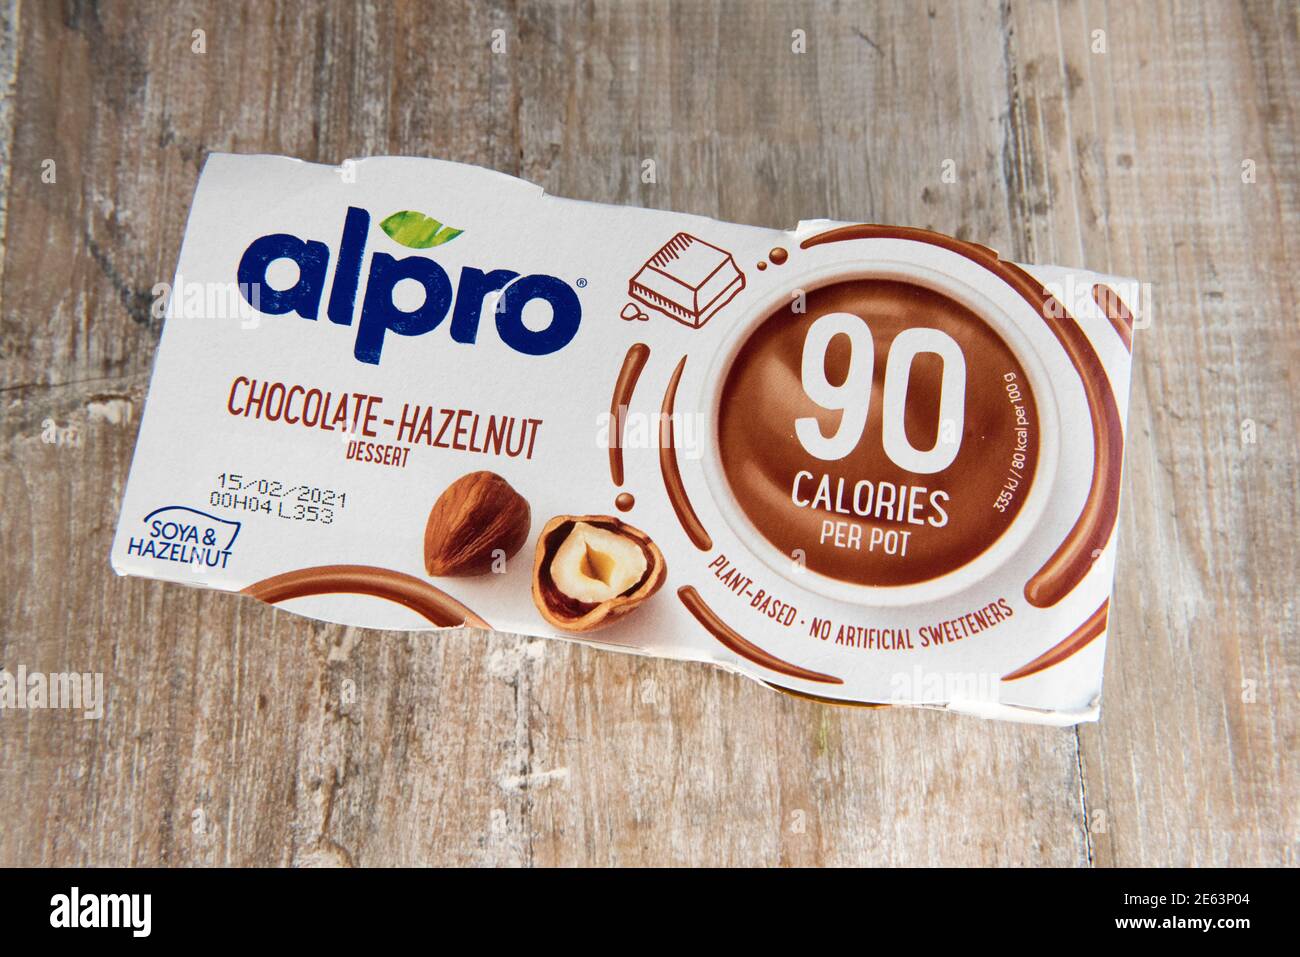 Alpro Chocolate - Haselnuss Dessert Sojabohnen auf pflanzlicher Basis veganer Joghurt Im Paket auf hölzernen Hintergrund Stockfoto